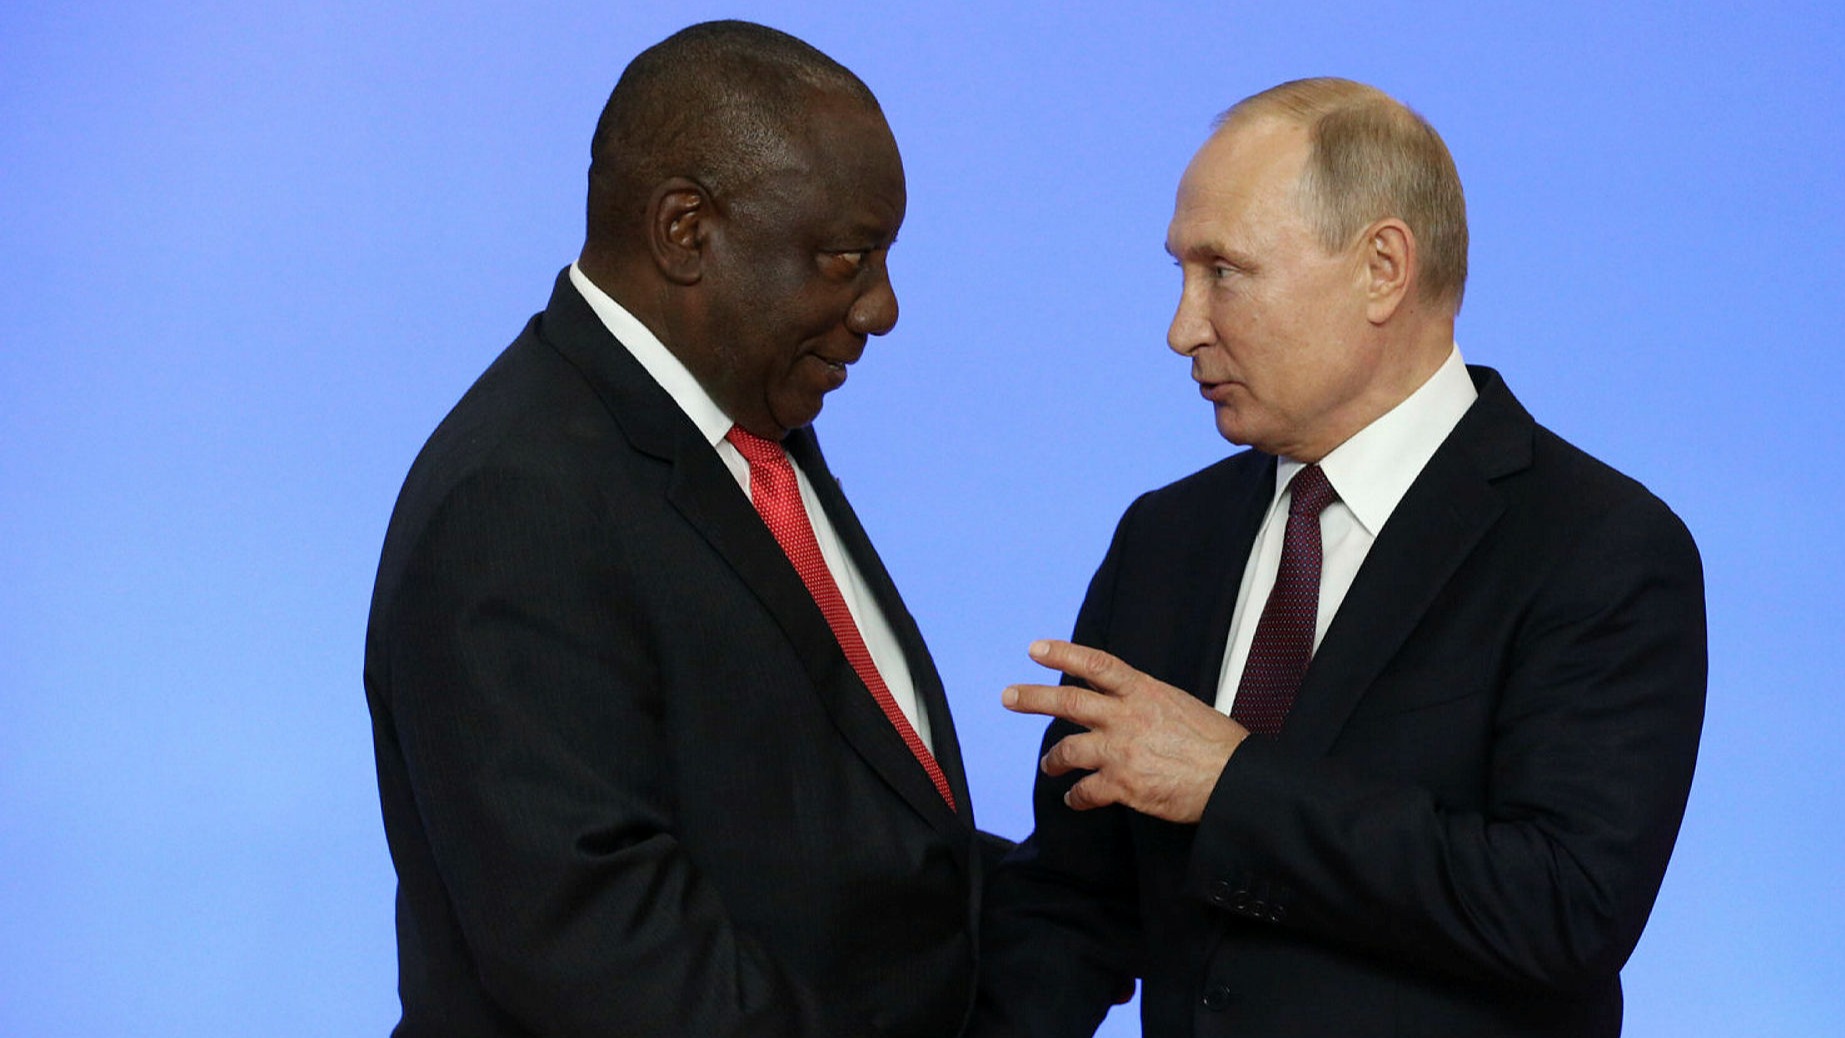 Νότια Αφρική: Το ένταλμα σύλληψης του Πούτιν απειλεί τη σύνοδο των BRICS